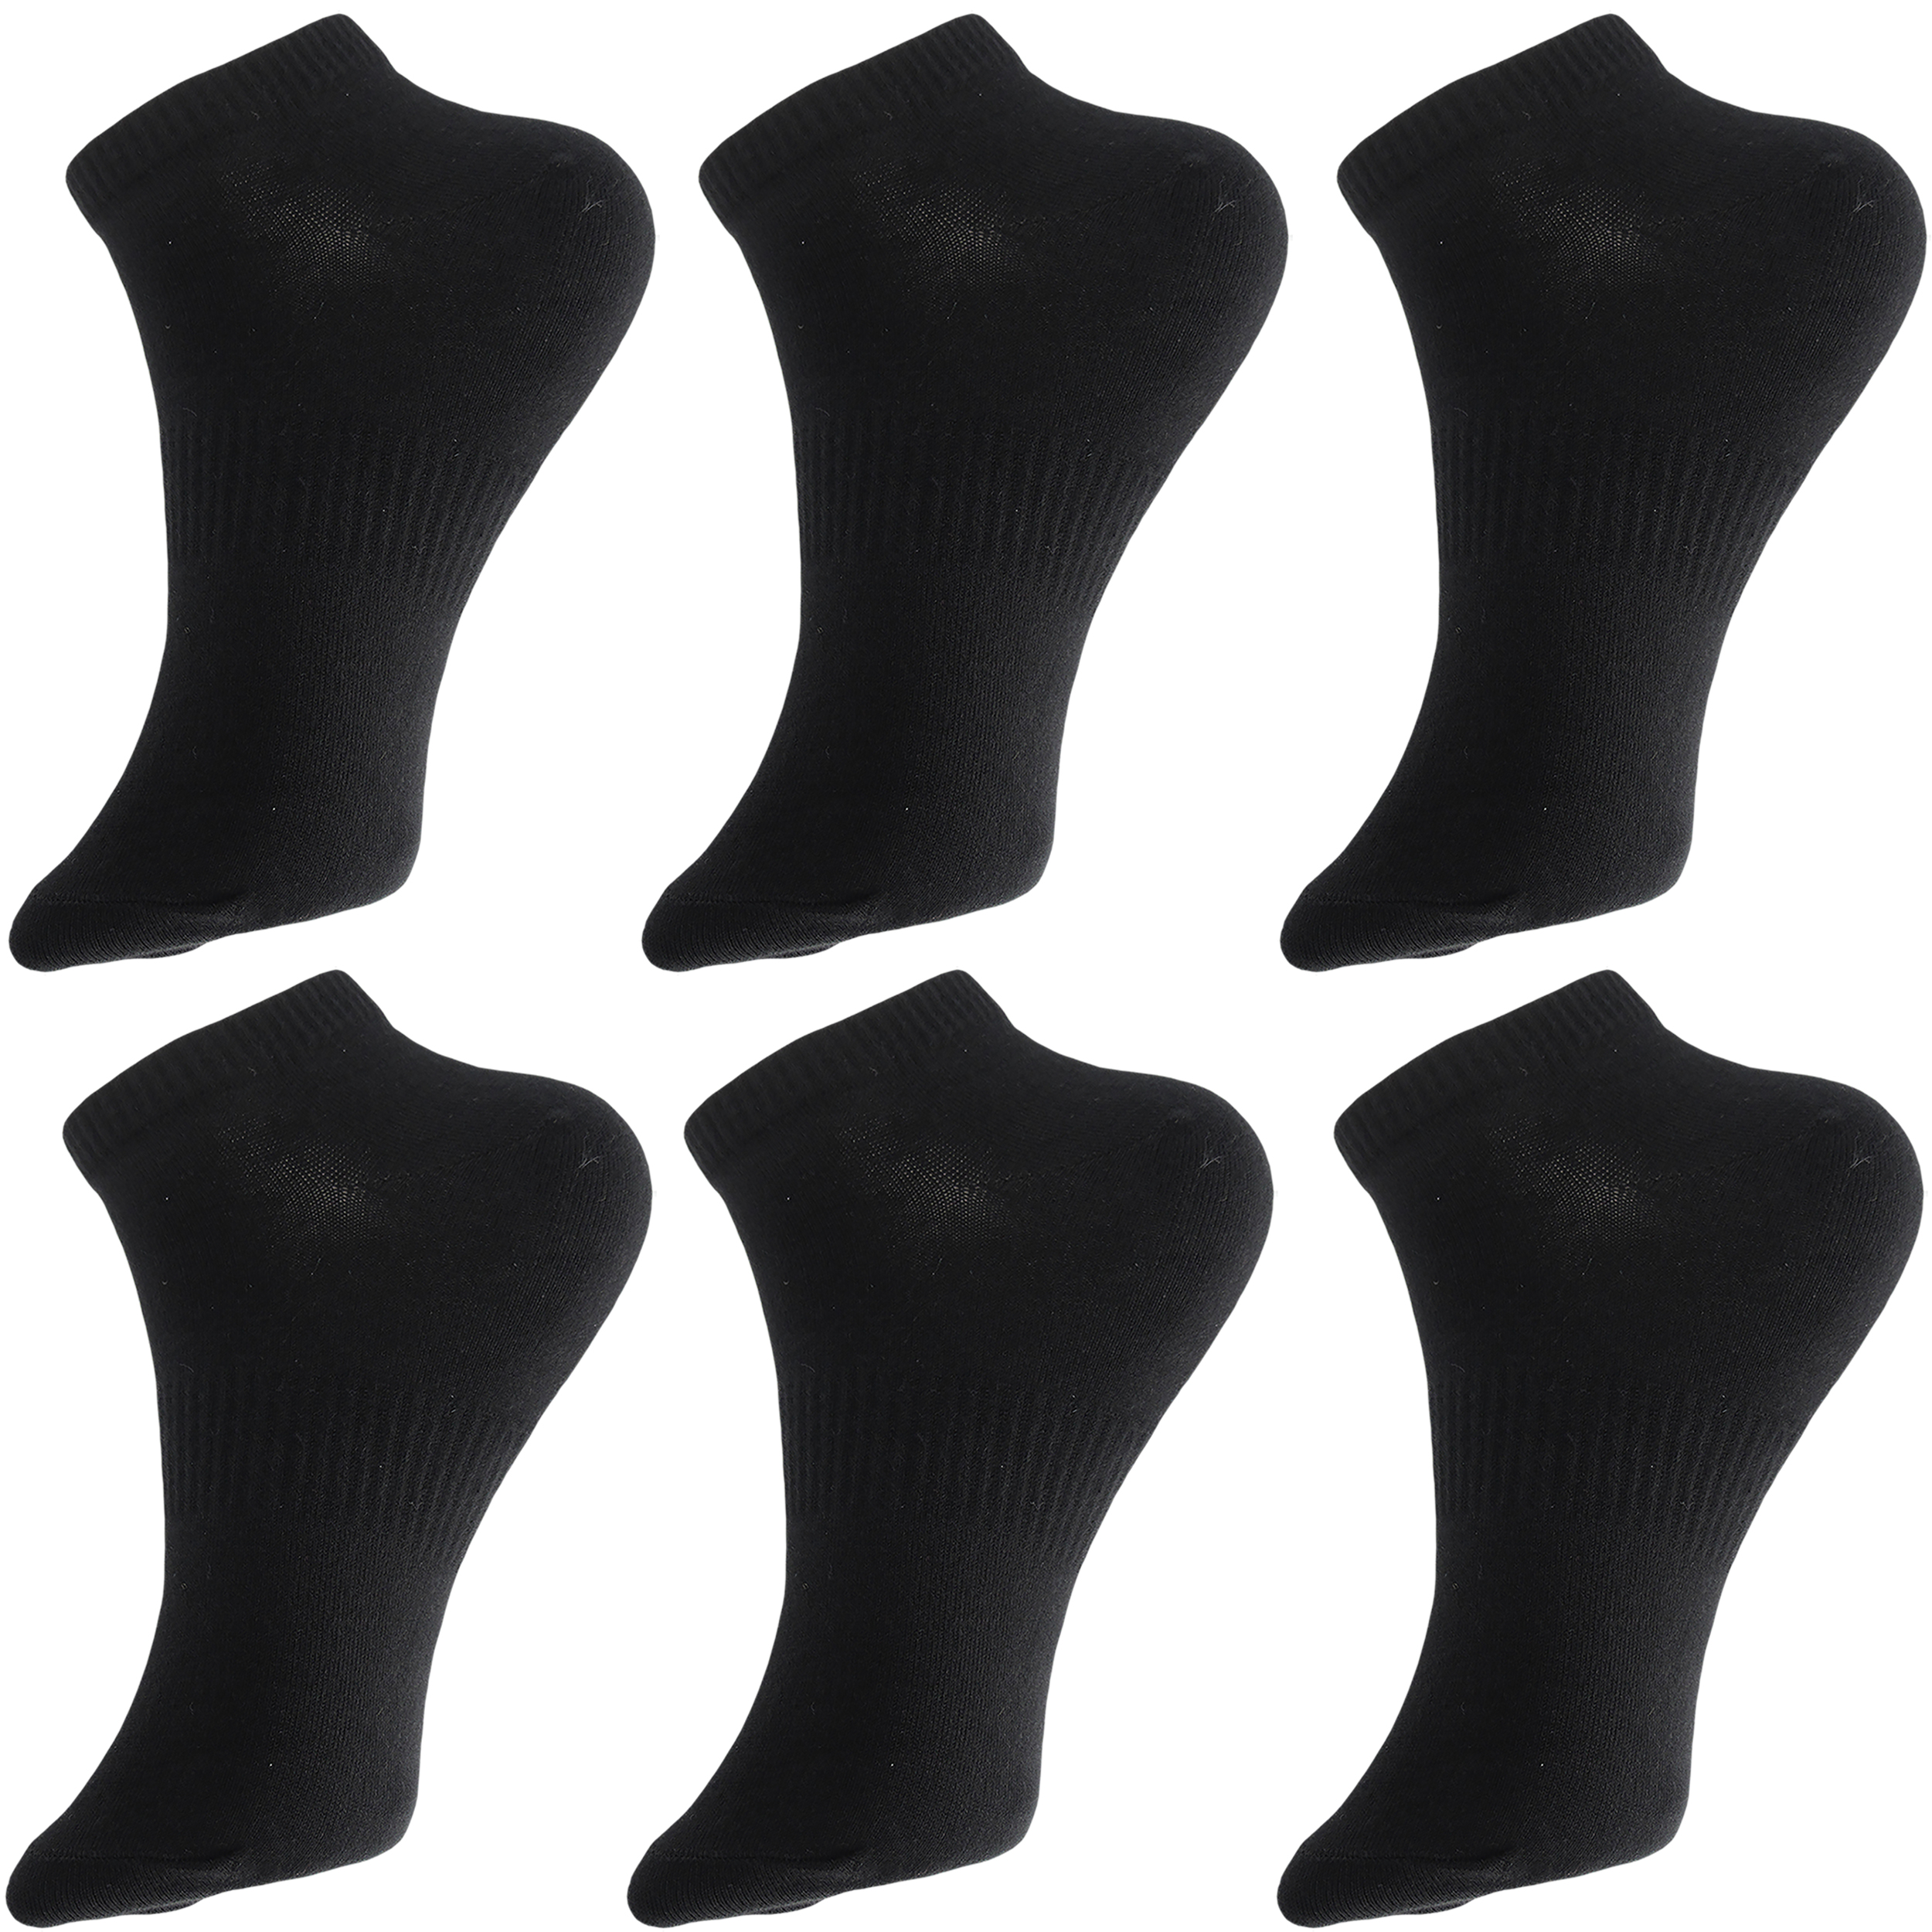 جوراب ورزشی ساق کوتاه مردانه ادیب مدل اسپرت کش انگلیسی کد MNSPT رنگ مشکی بسته 6 عددی